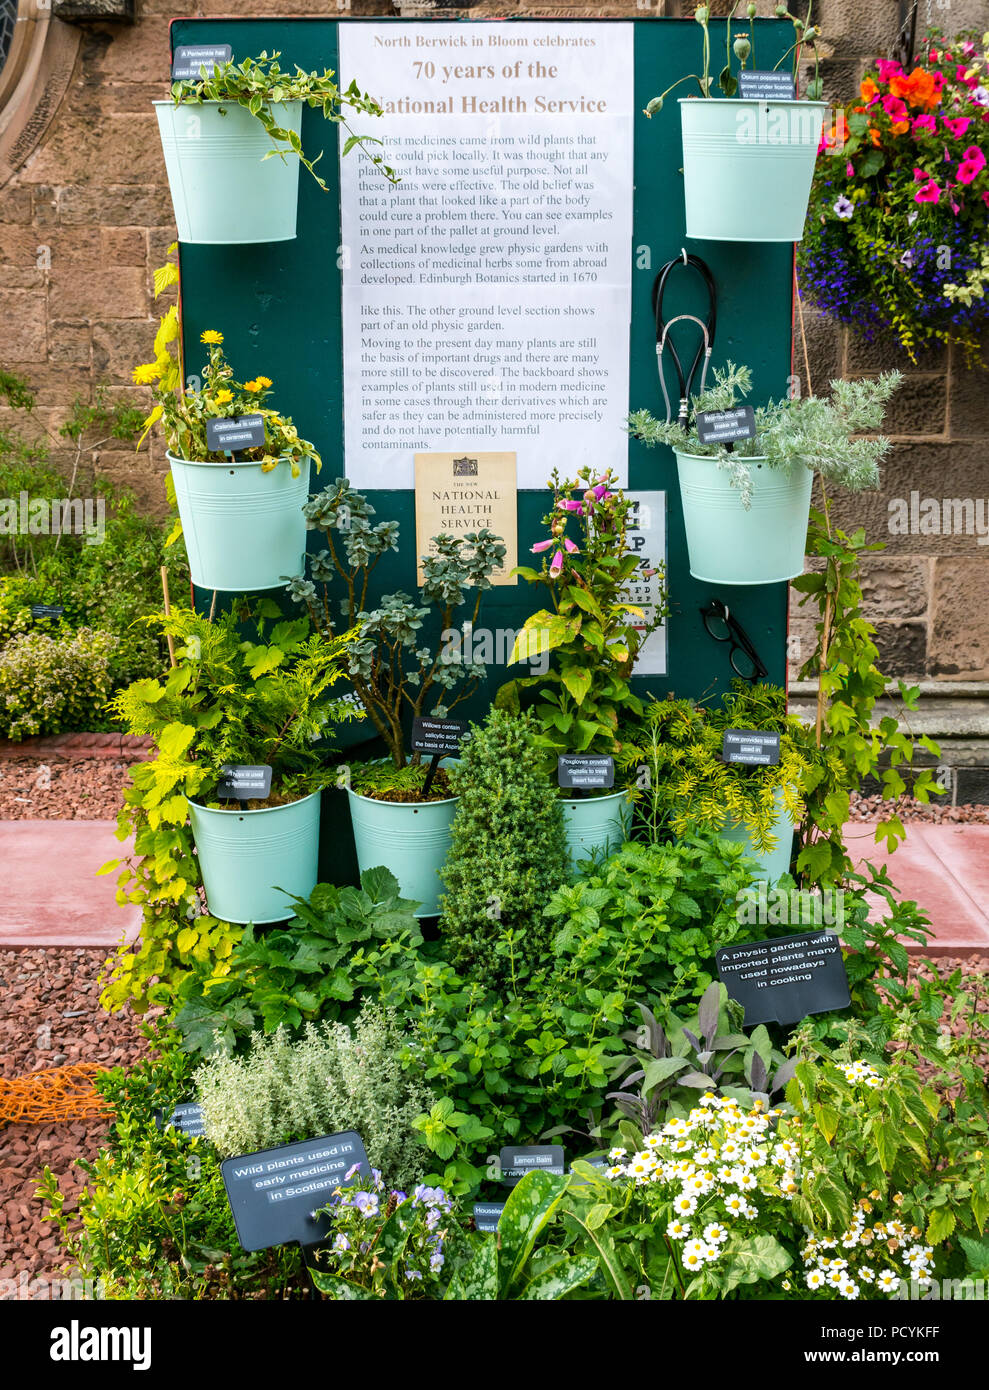 Adorno floral plantas medicinales celebrando 70 años del Servicio Nacional de Salud, la Iglesia de la Abadía, North Berwick en flor, East Lothian, Escocia, Reino Unido Foto de stock